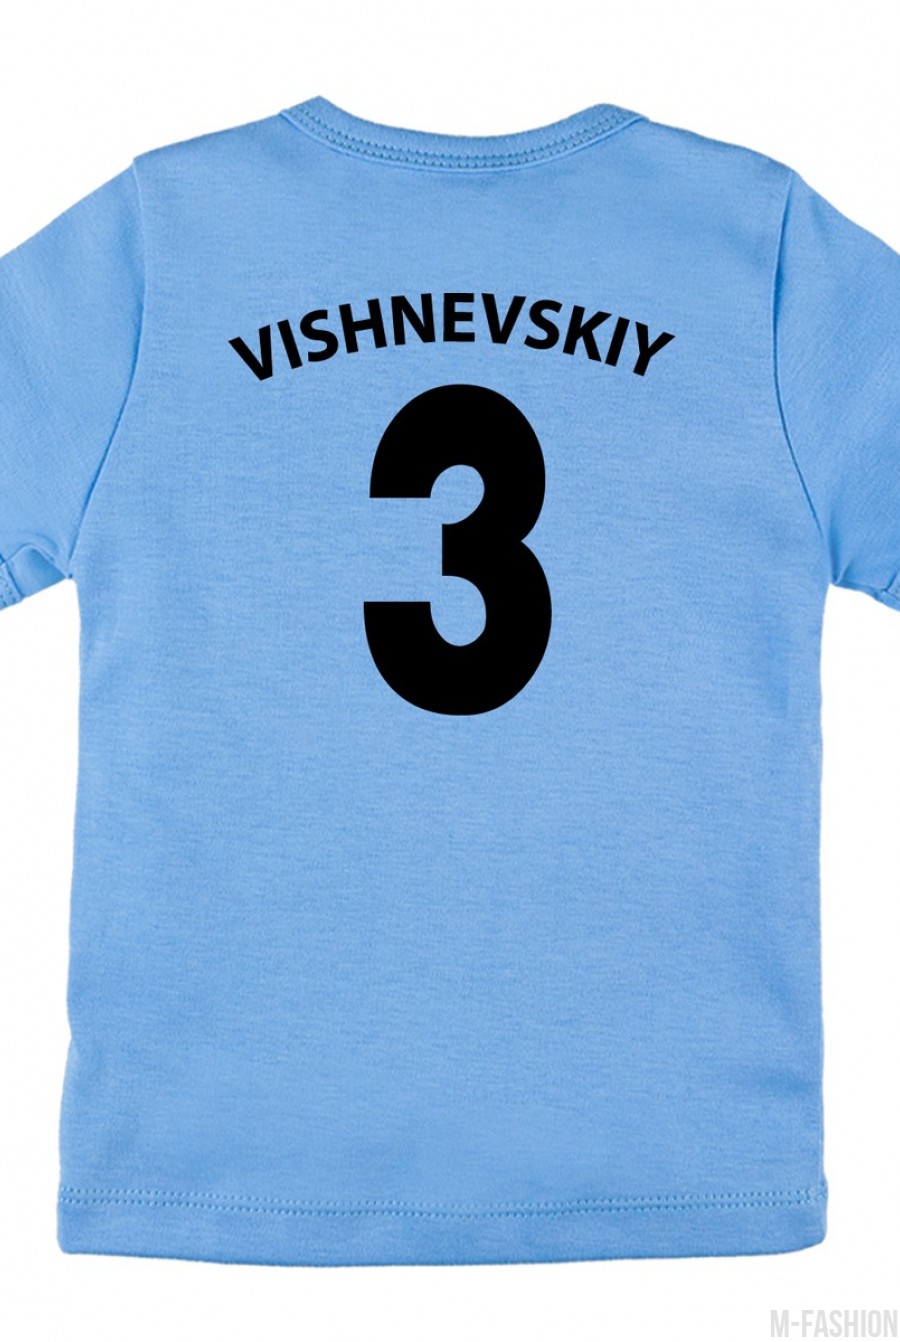 Хлопковая футболка с принтом и возможностью индивидуальной печати фамилии и номера- Фото 6